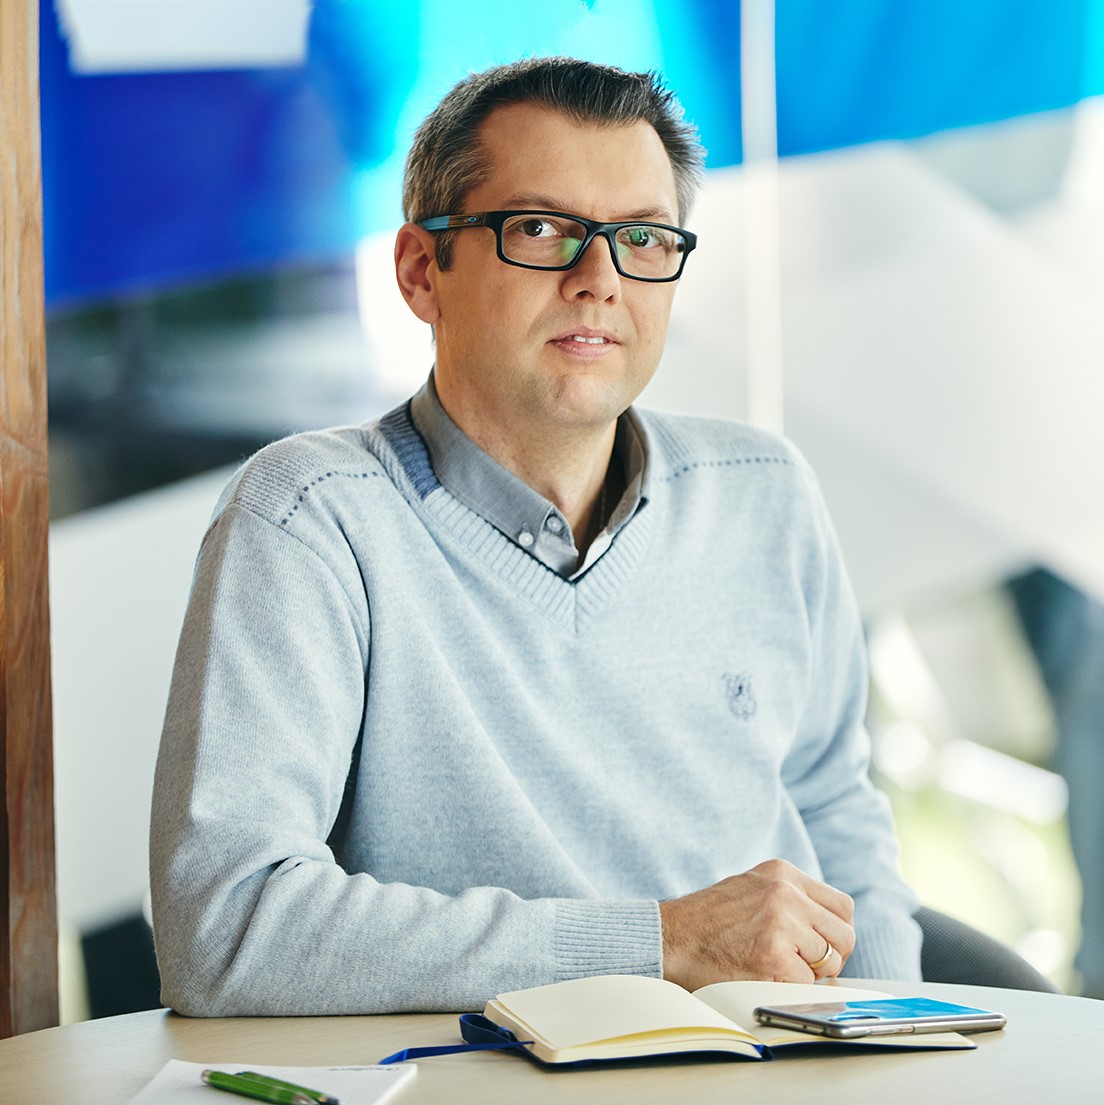 Paweł Pietrzak – IT Architekt mit interner & externer Projekterfahrung